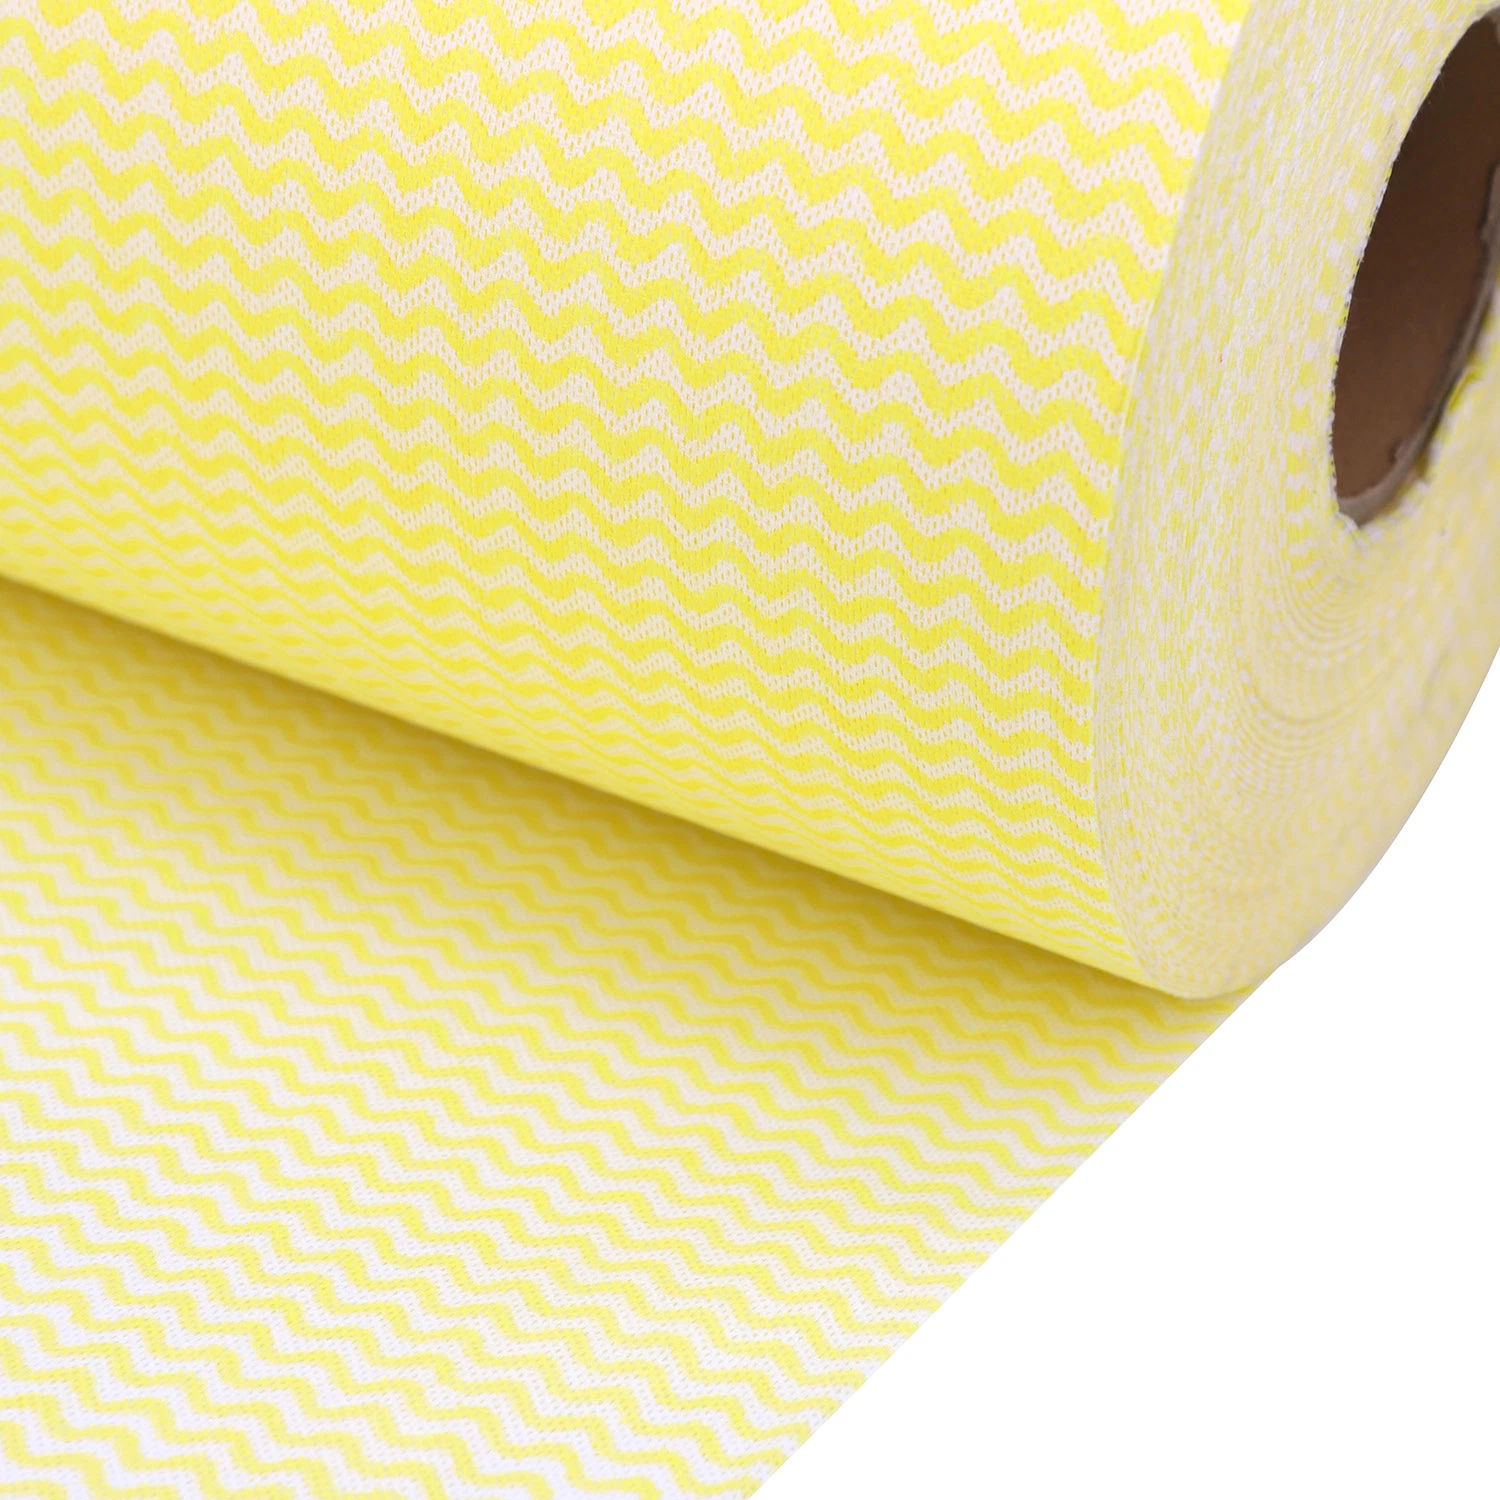 Holzstoff Polyester Laminateds Spunlace Vliesstoff, Wave Line Materialien für die Küchenreinigung, Haushaltsreinigung, Zivilwischer